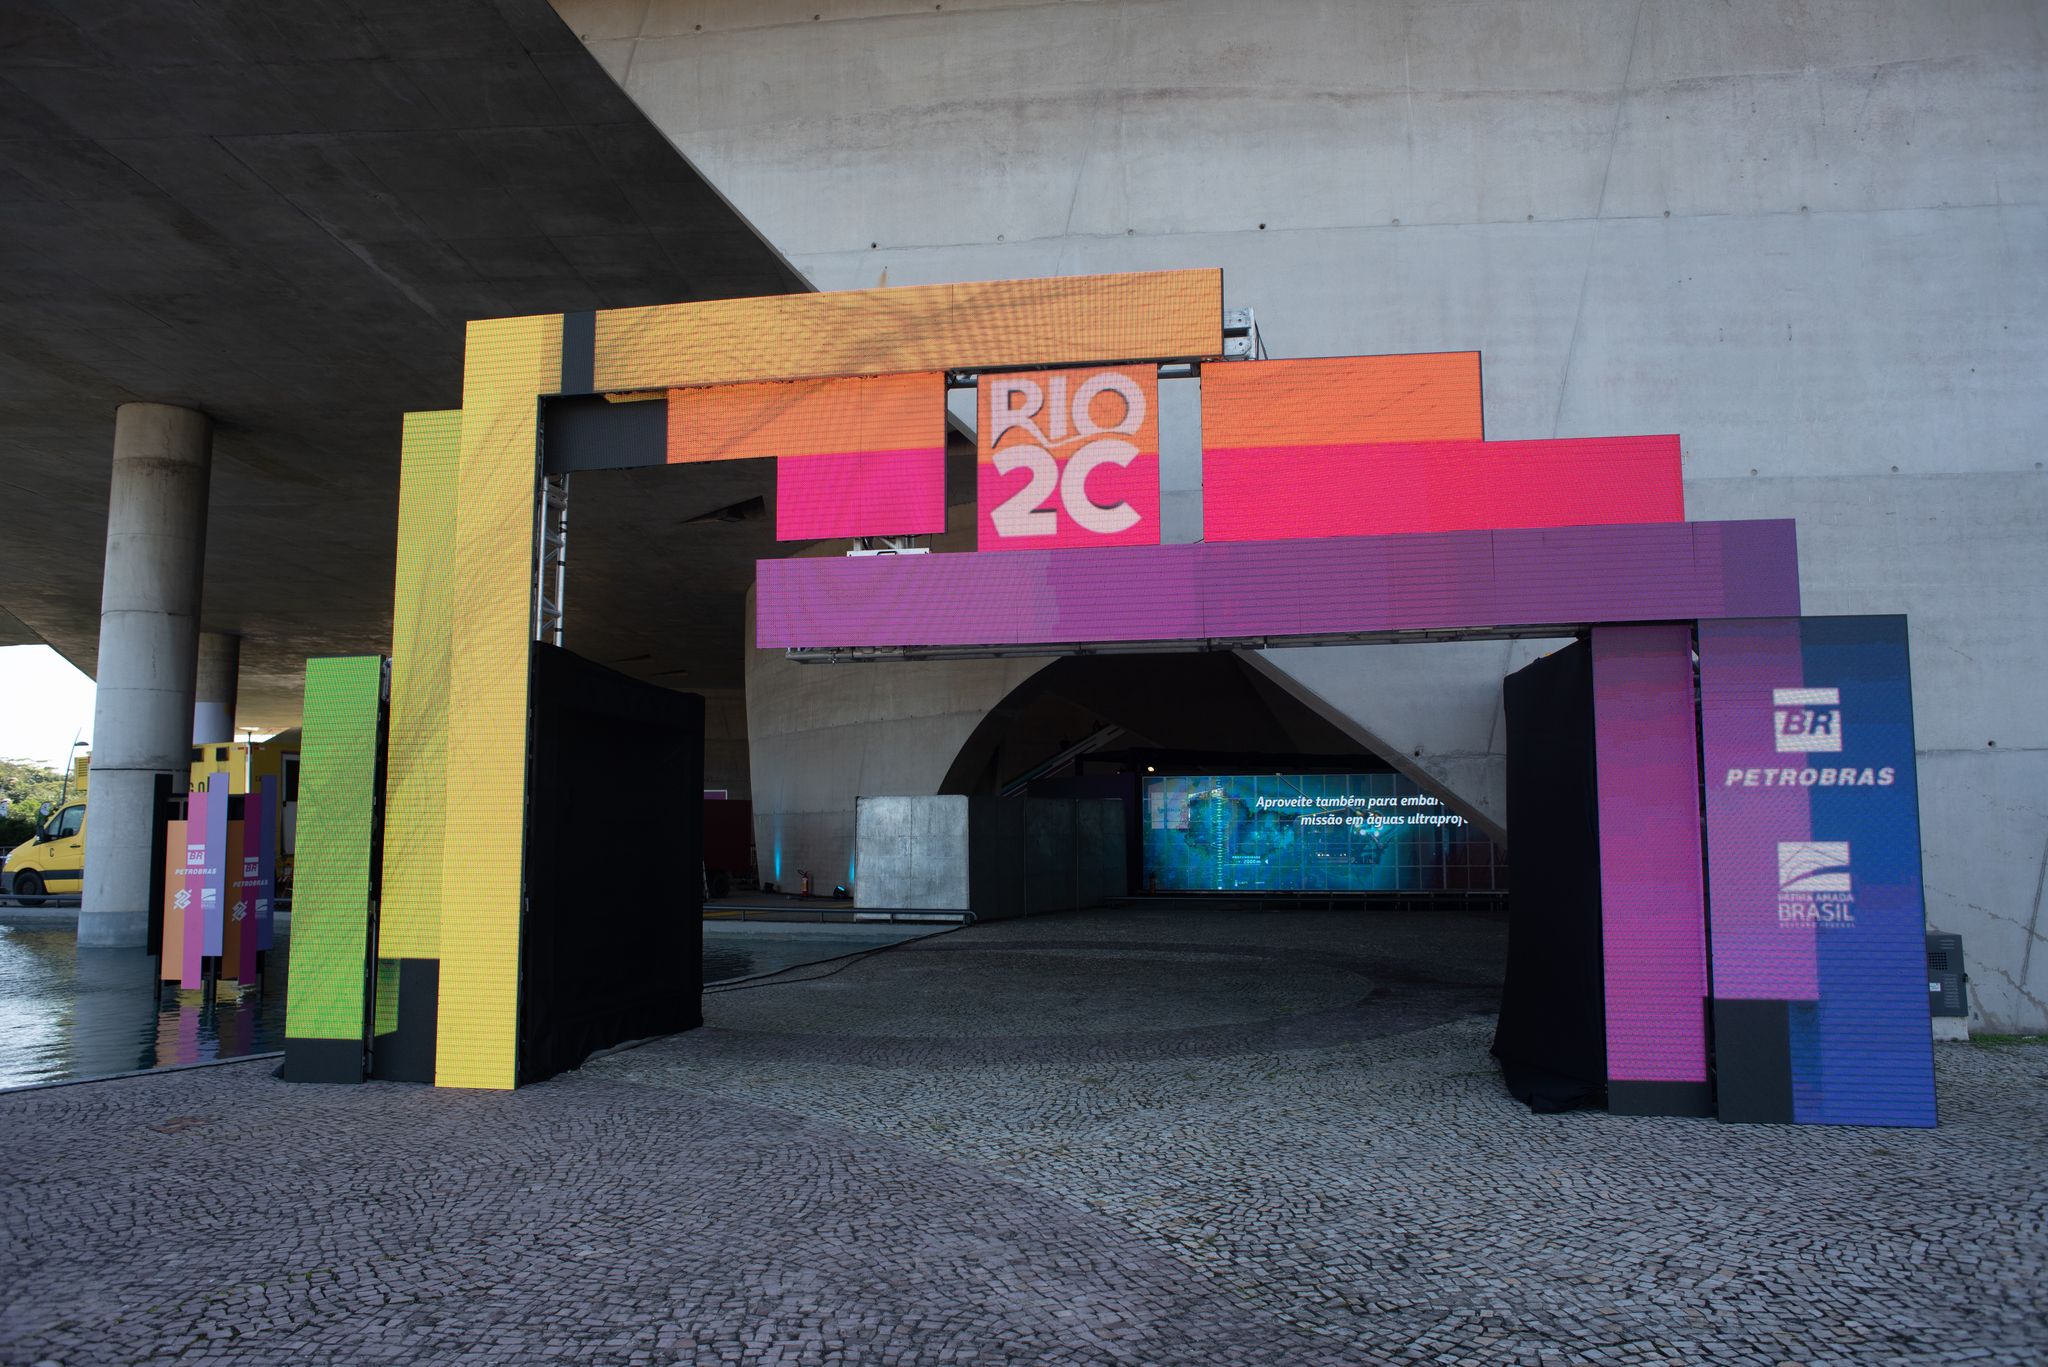 Rio2C 2022 tem foco nos segmentos dos games e das marcas